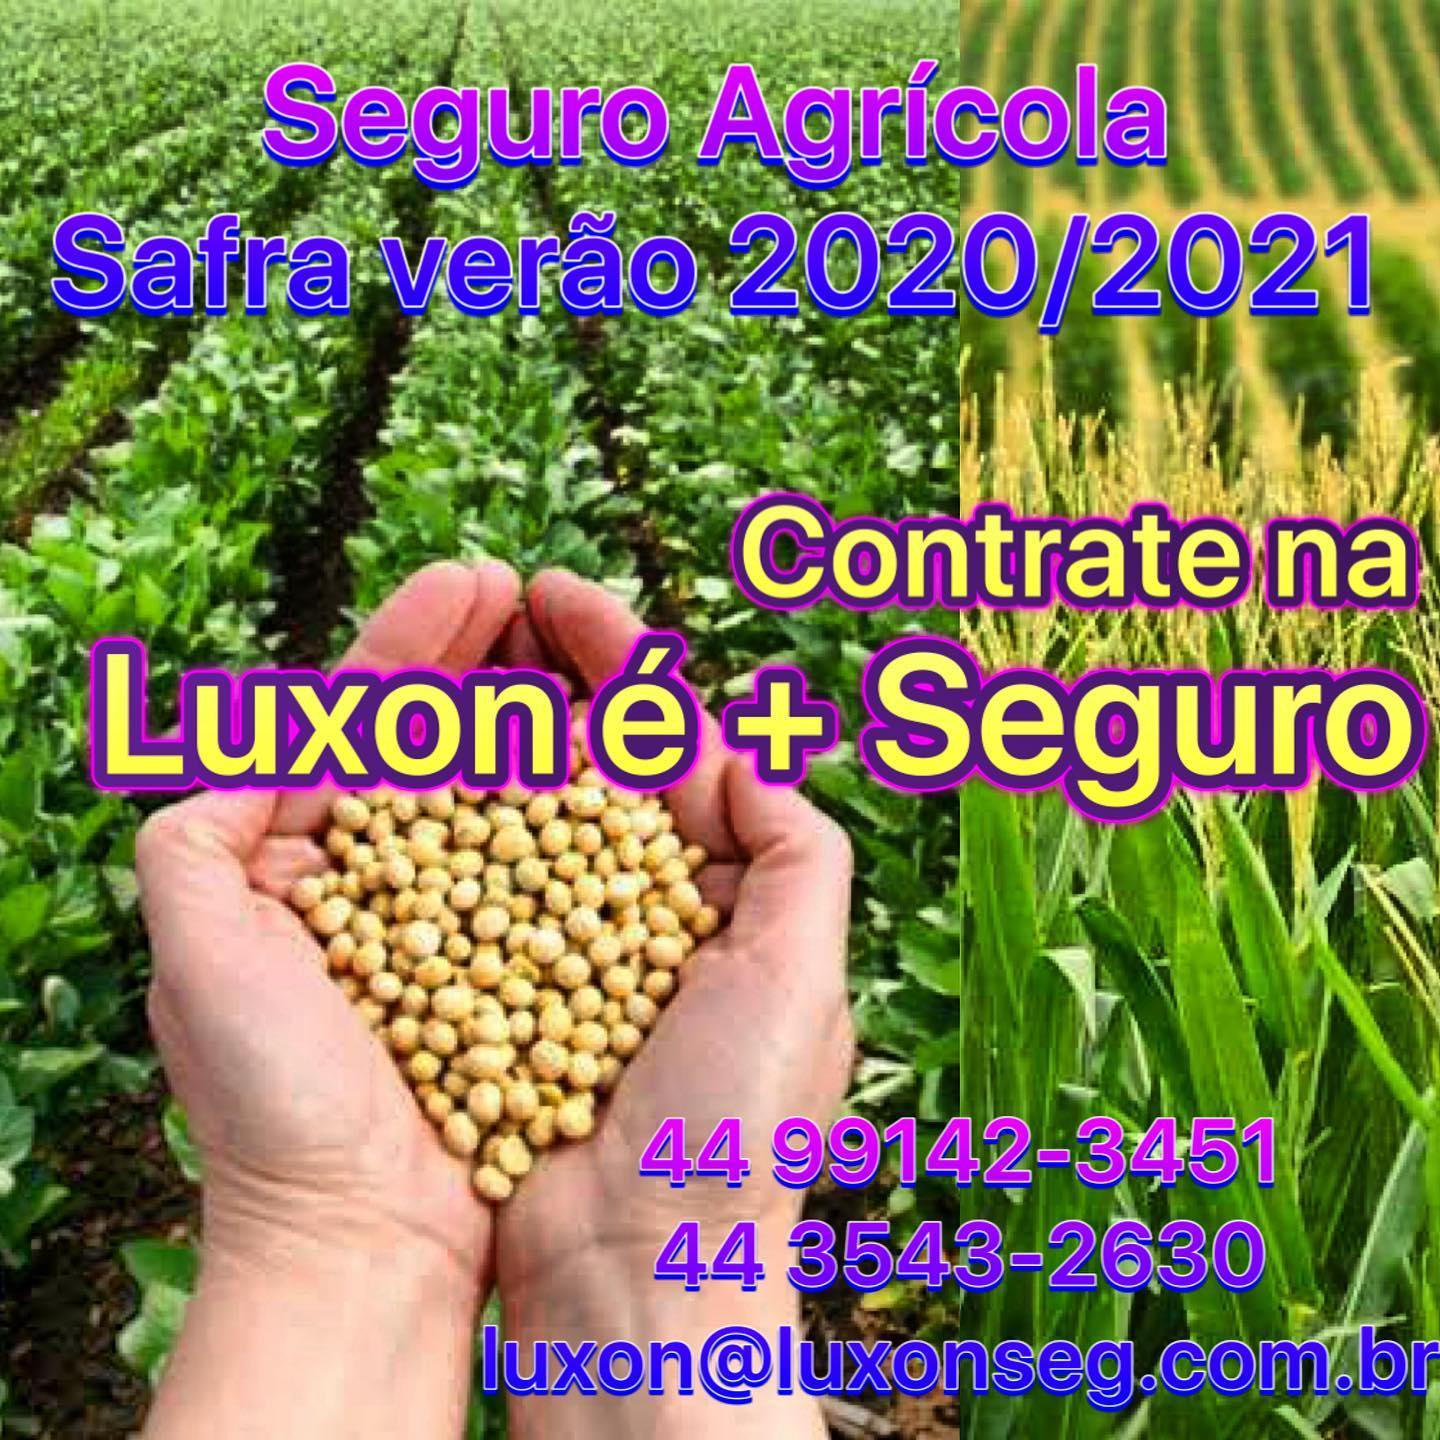 Seguro Agrícola: Contrate o seguro para safra verão 2020/2021 na Luxon é + Seguro e fique tranquilo